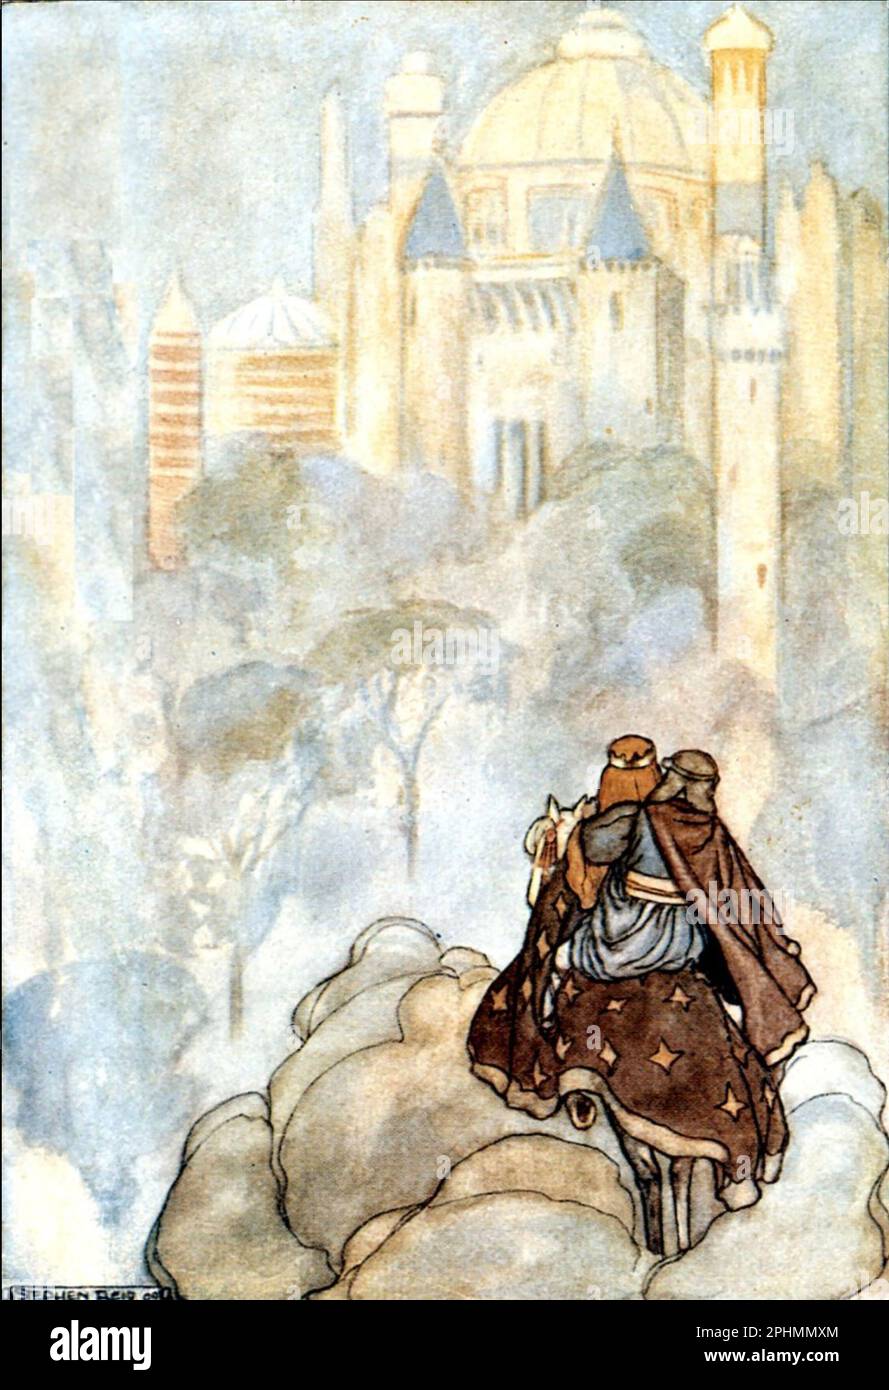 Tír na nÓg - terra della gioventù - un mito celtico in un'illustrazione dell'artista scozzese Stephen Reid da un libro del 1910 che mostra Oisin e Niamh che si avvicinano alla terra della gioventù. Foto Stock